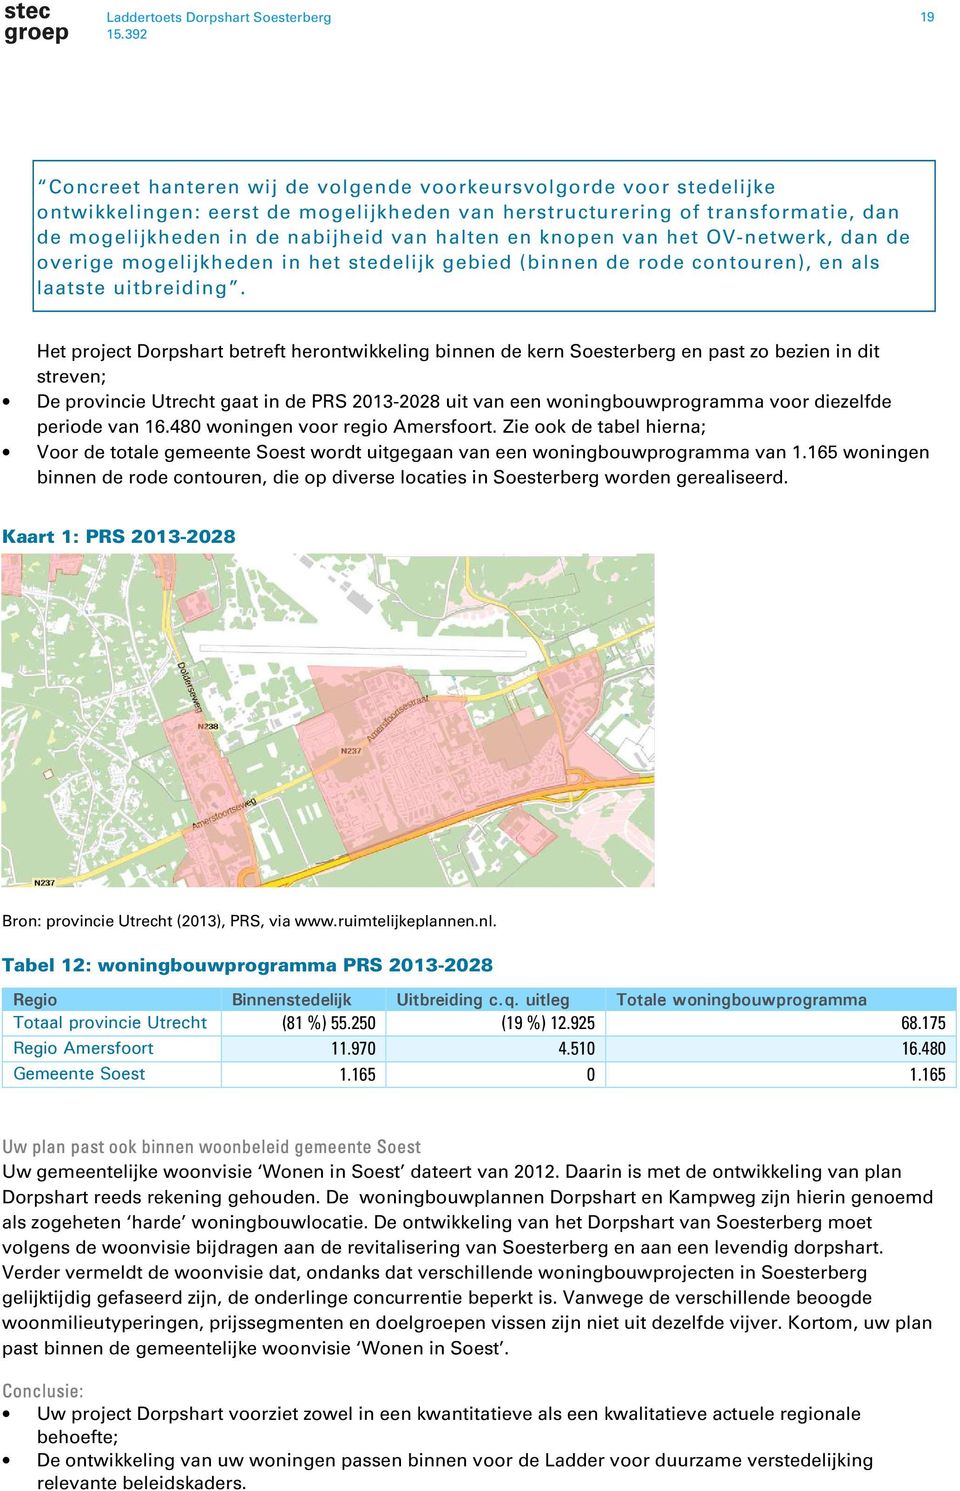 Het project Dorpshart betreft herontwikkeling binnen de kern Soesterberg en past zo bezien in dit streven; De provincie Utrecht gaat in de PRS 2013-2028 uit van een woningbouwprogramma voor diezelfde